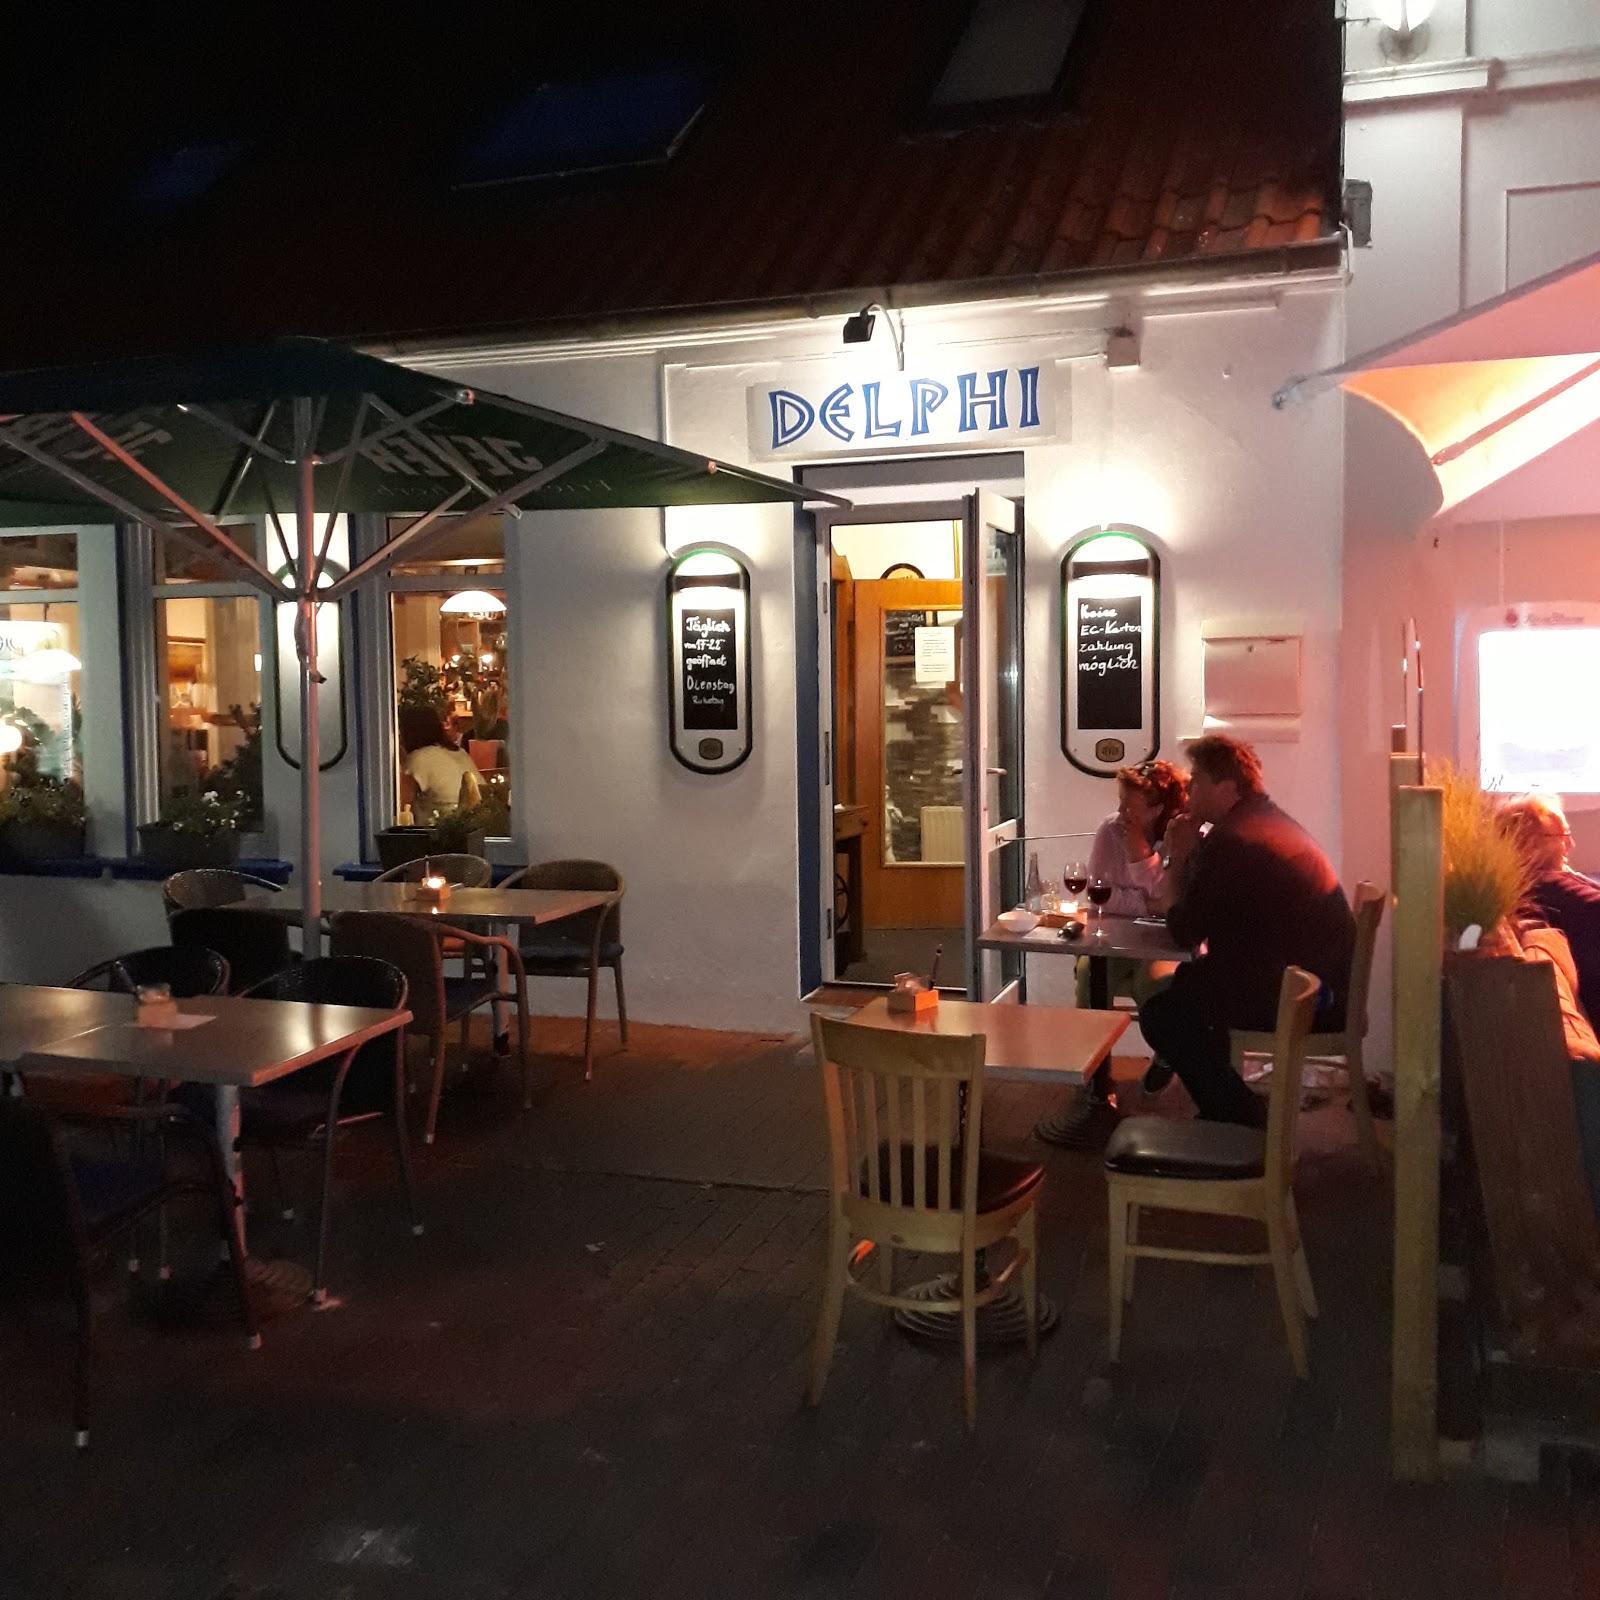 Restaurant "Restaurant Delphi Inh. Alexandris Zisis" in Norderney